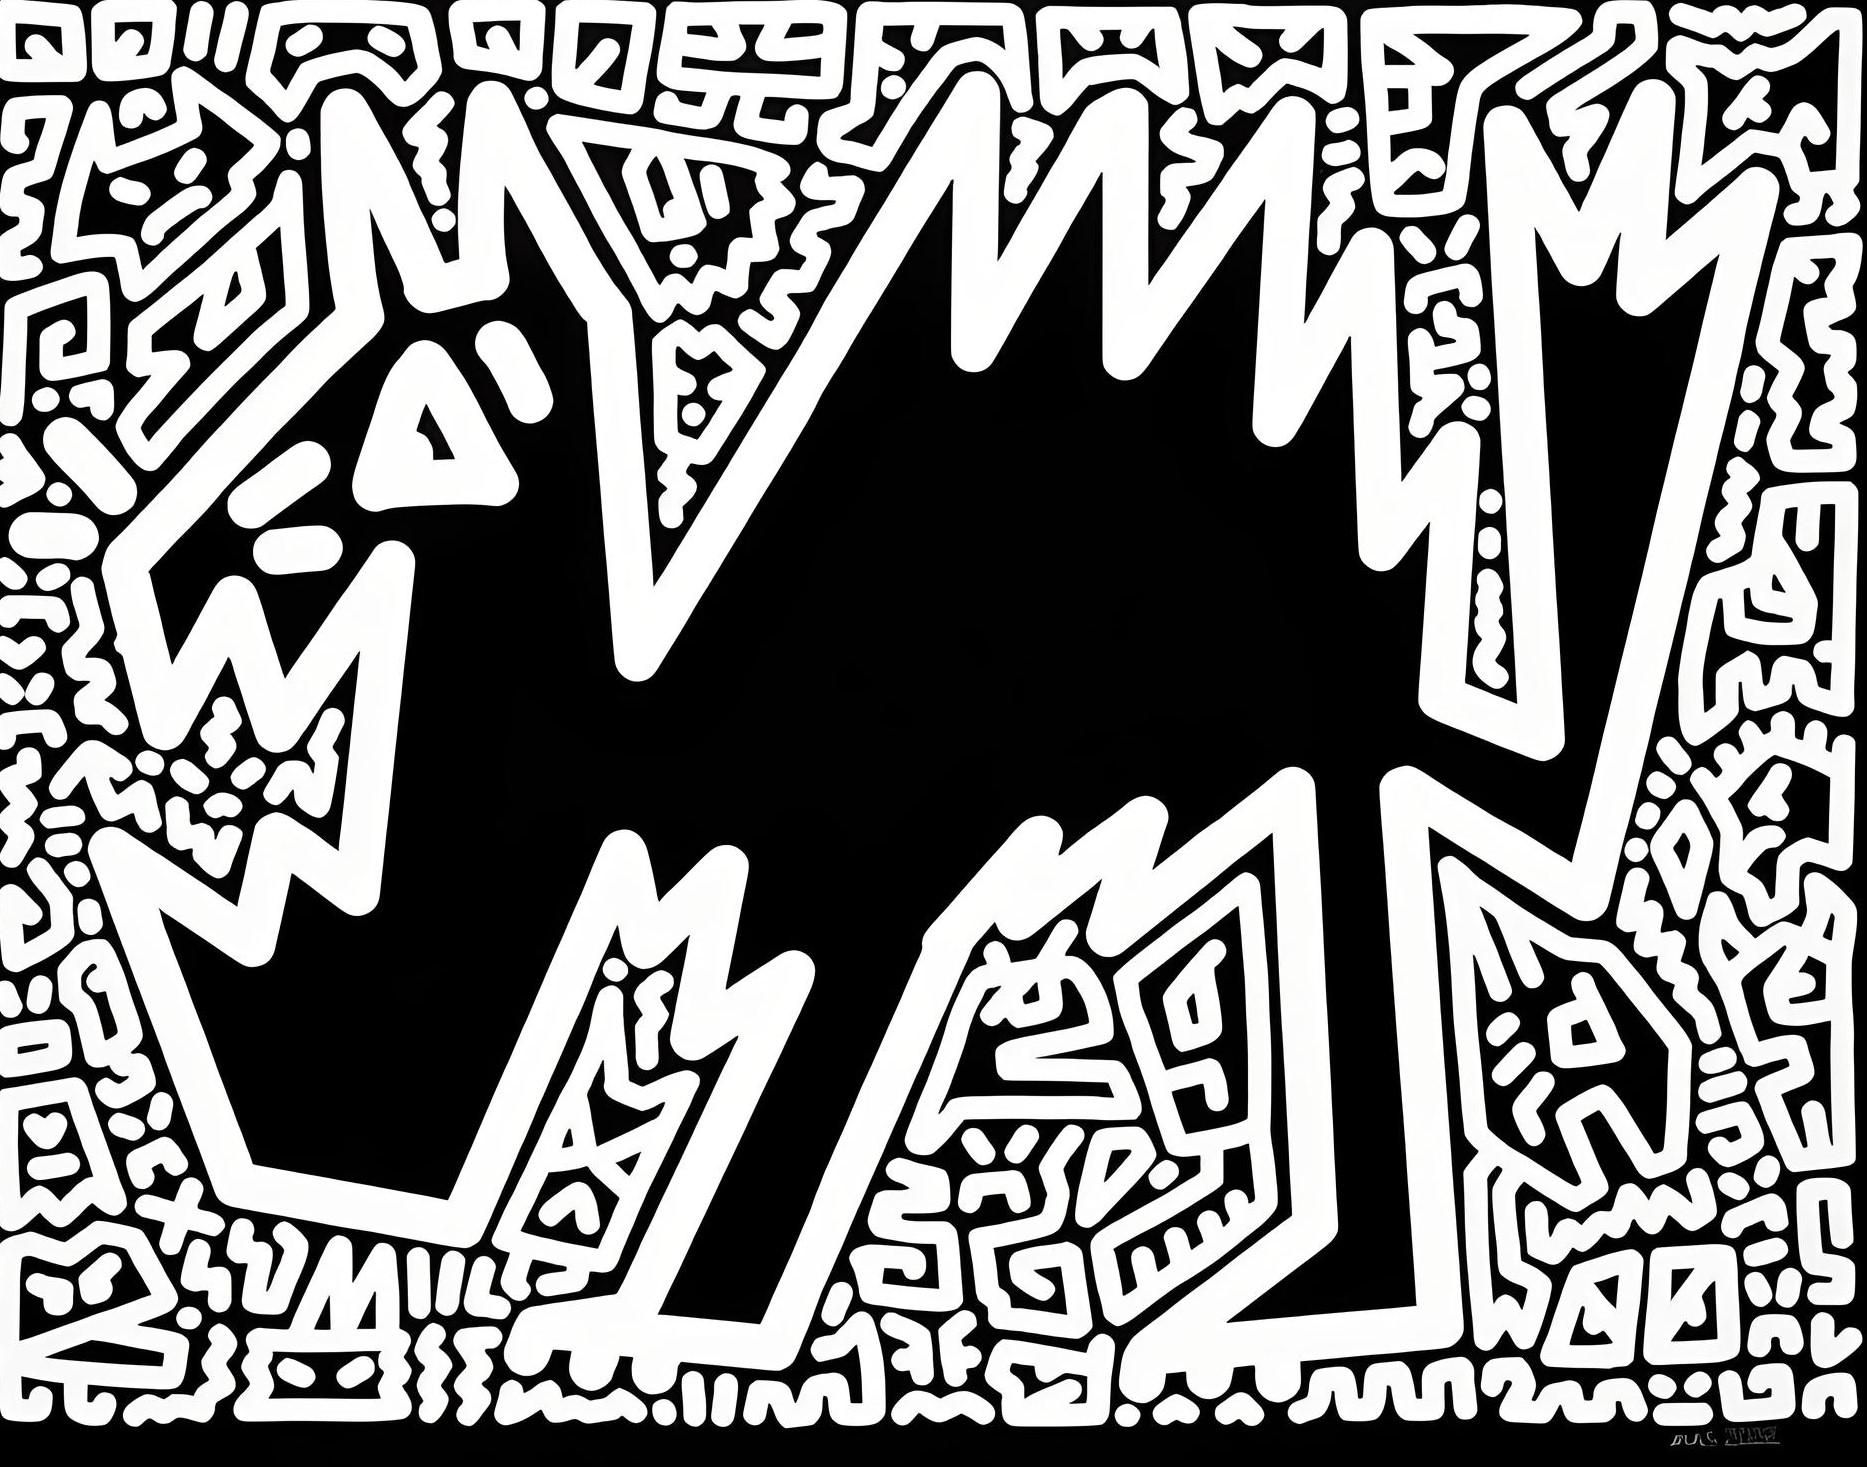 Woof et Meow - Art urbain Print par Mr. Doodle